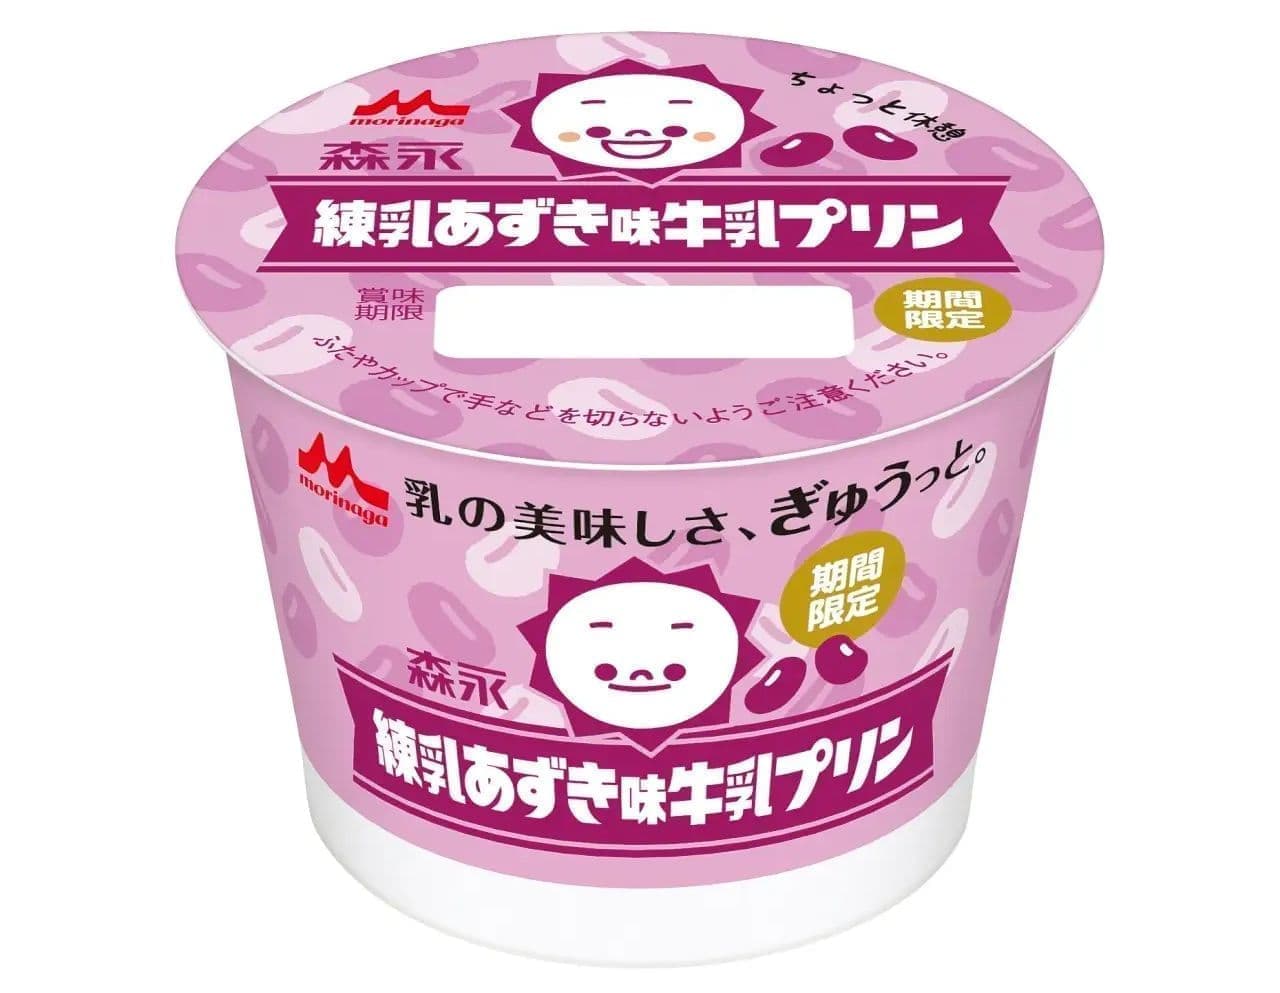 Morinaga Condensed Milk Azuki Flavor Milk Pudding